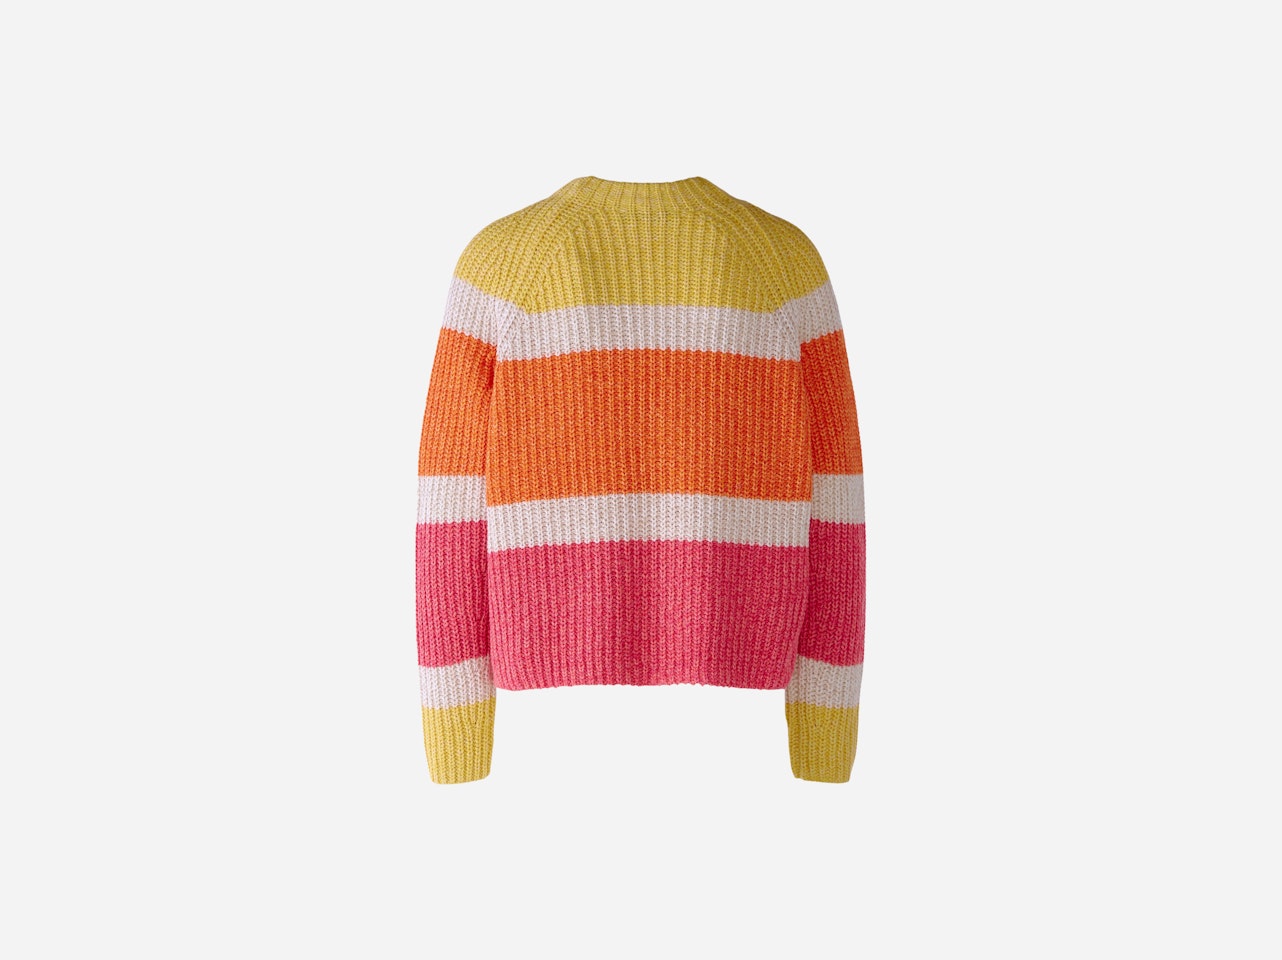 Bild 8 von Knitted jumper in cotton blend in red yellow | Oui